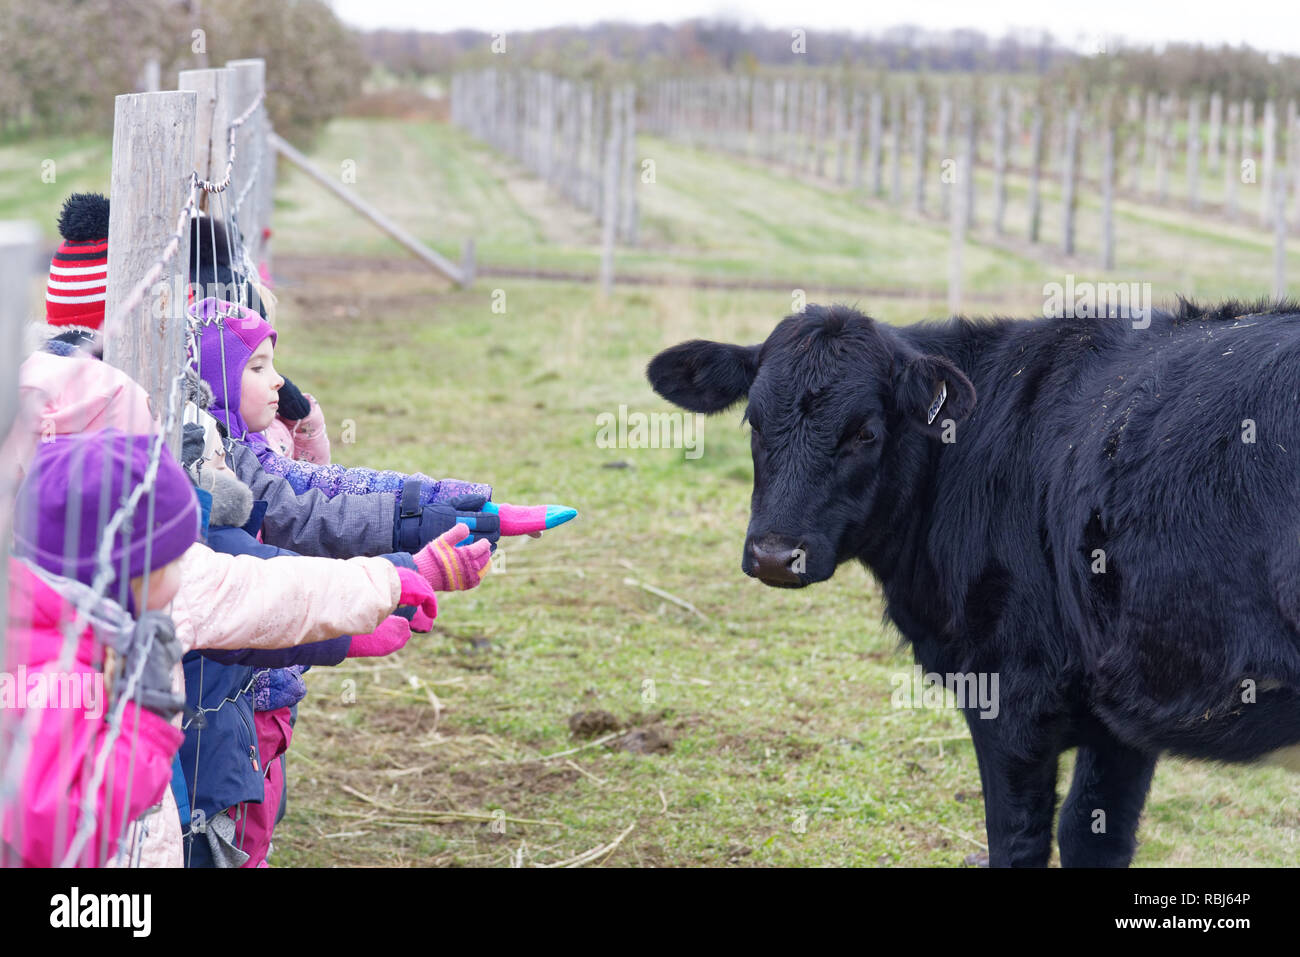 Kinder auf dem Bauernhof erreichen durch einen Zaun ein schwarzes Kalb zu berühren Stockfoto